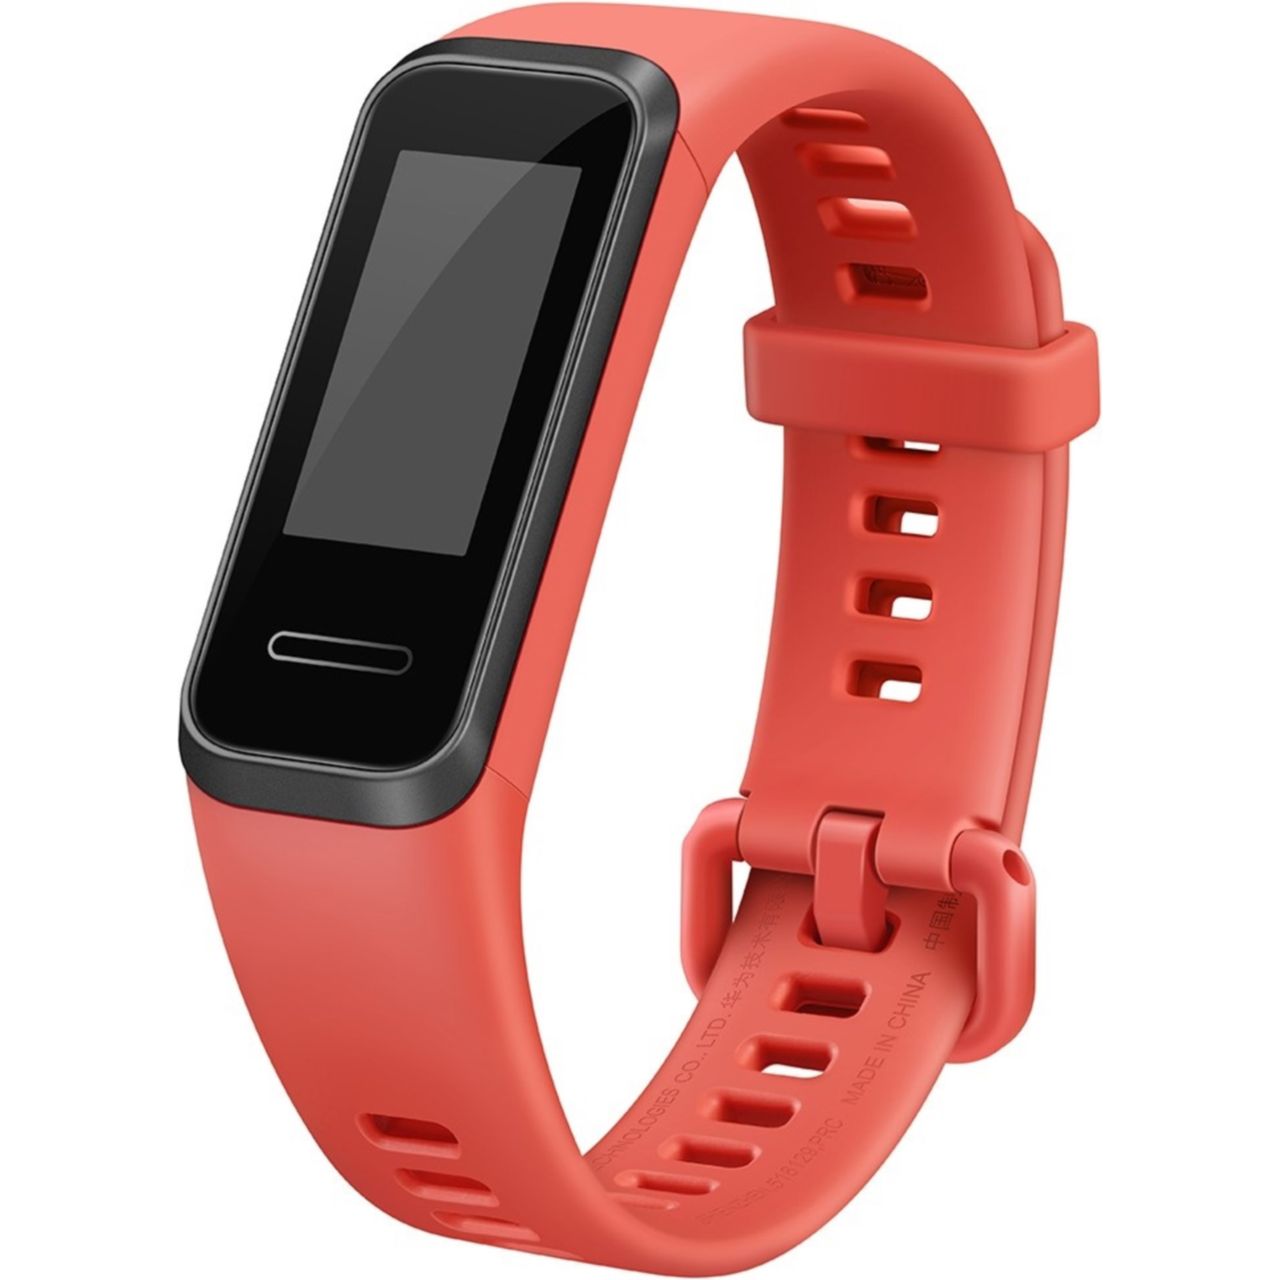 Huawei Band 4 Smart Watch Review